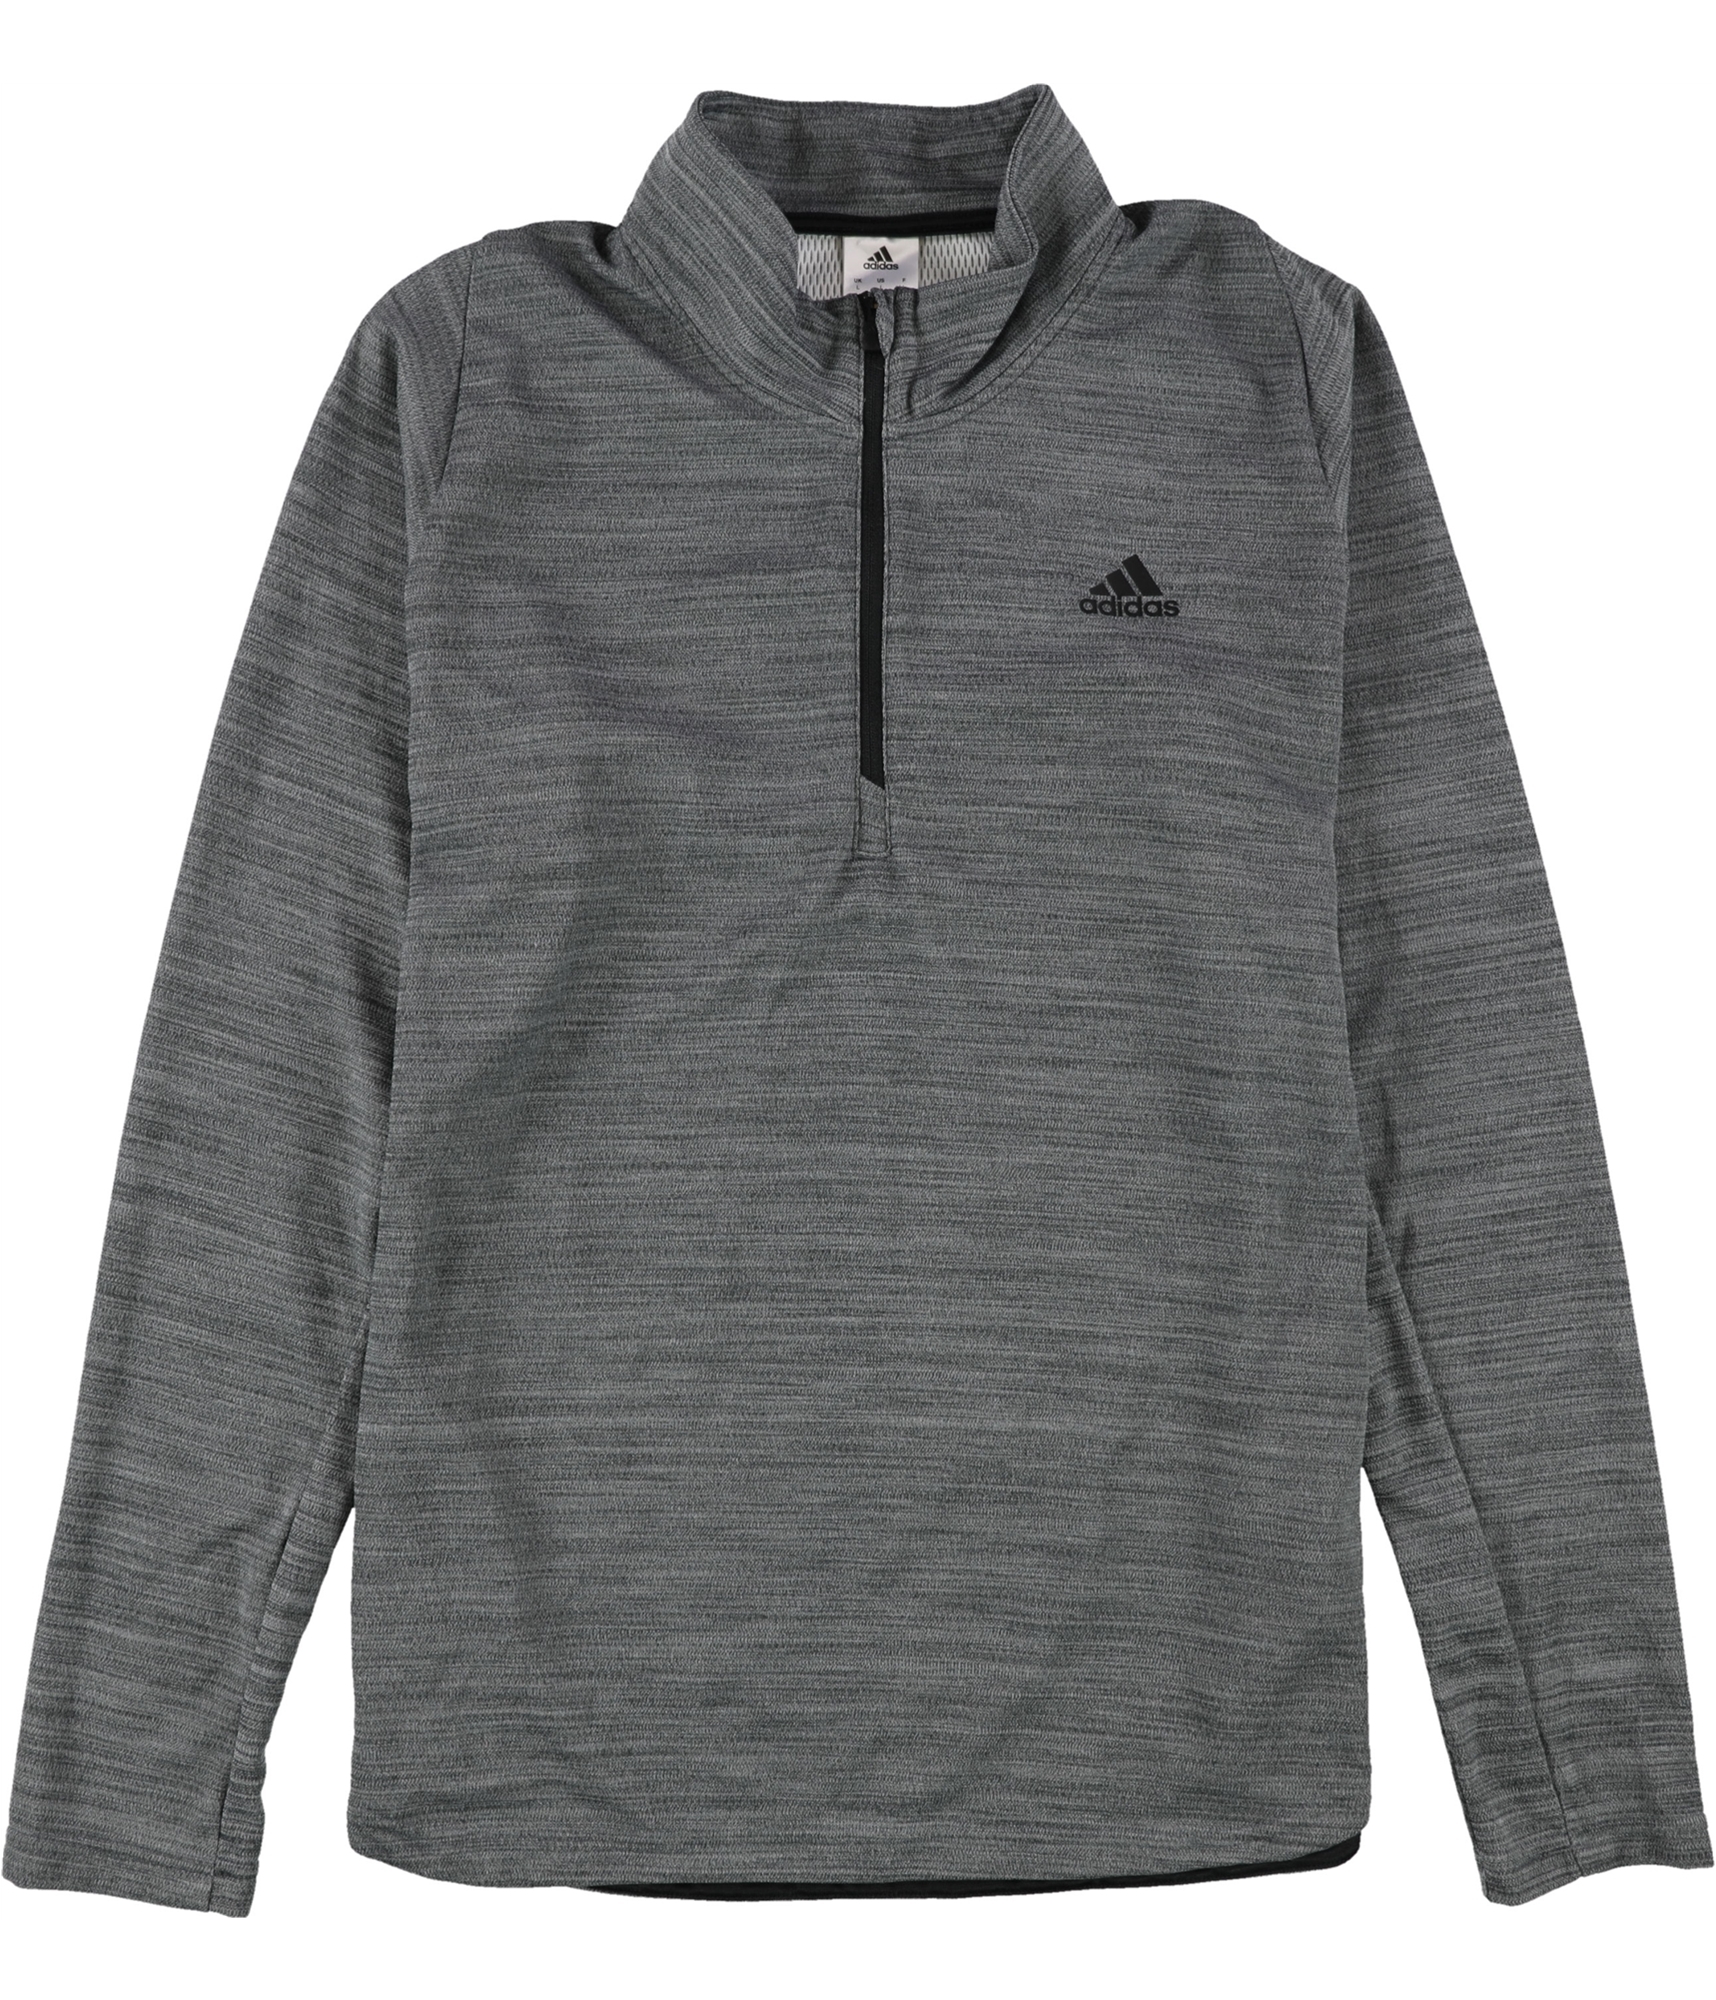 Alegre cavidad Persistencia Buy a Mens Adidas 1/4 Zip High Neck Sweatshirt Online | TagsWeekly.com